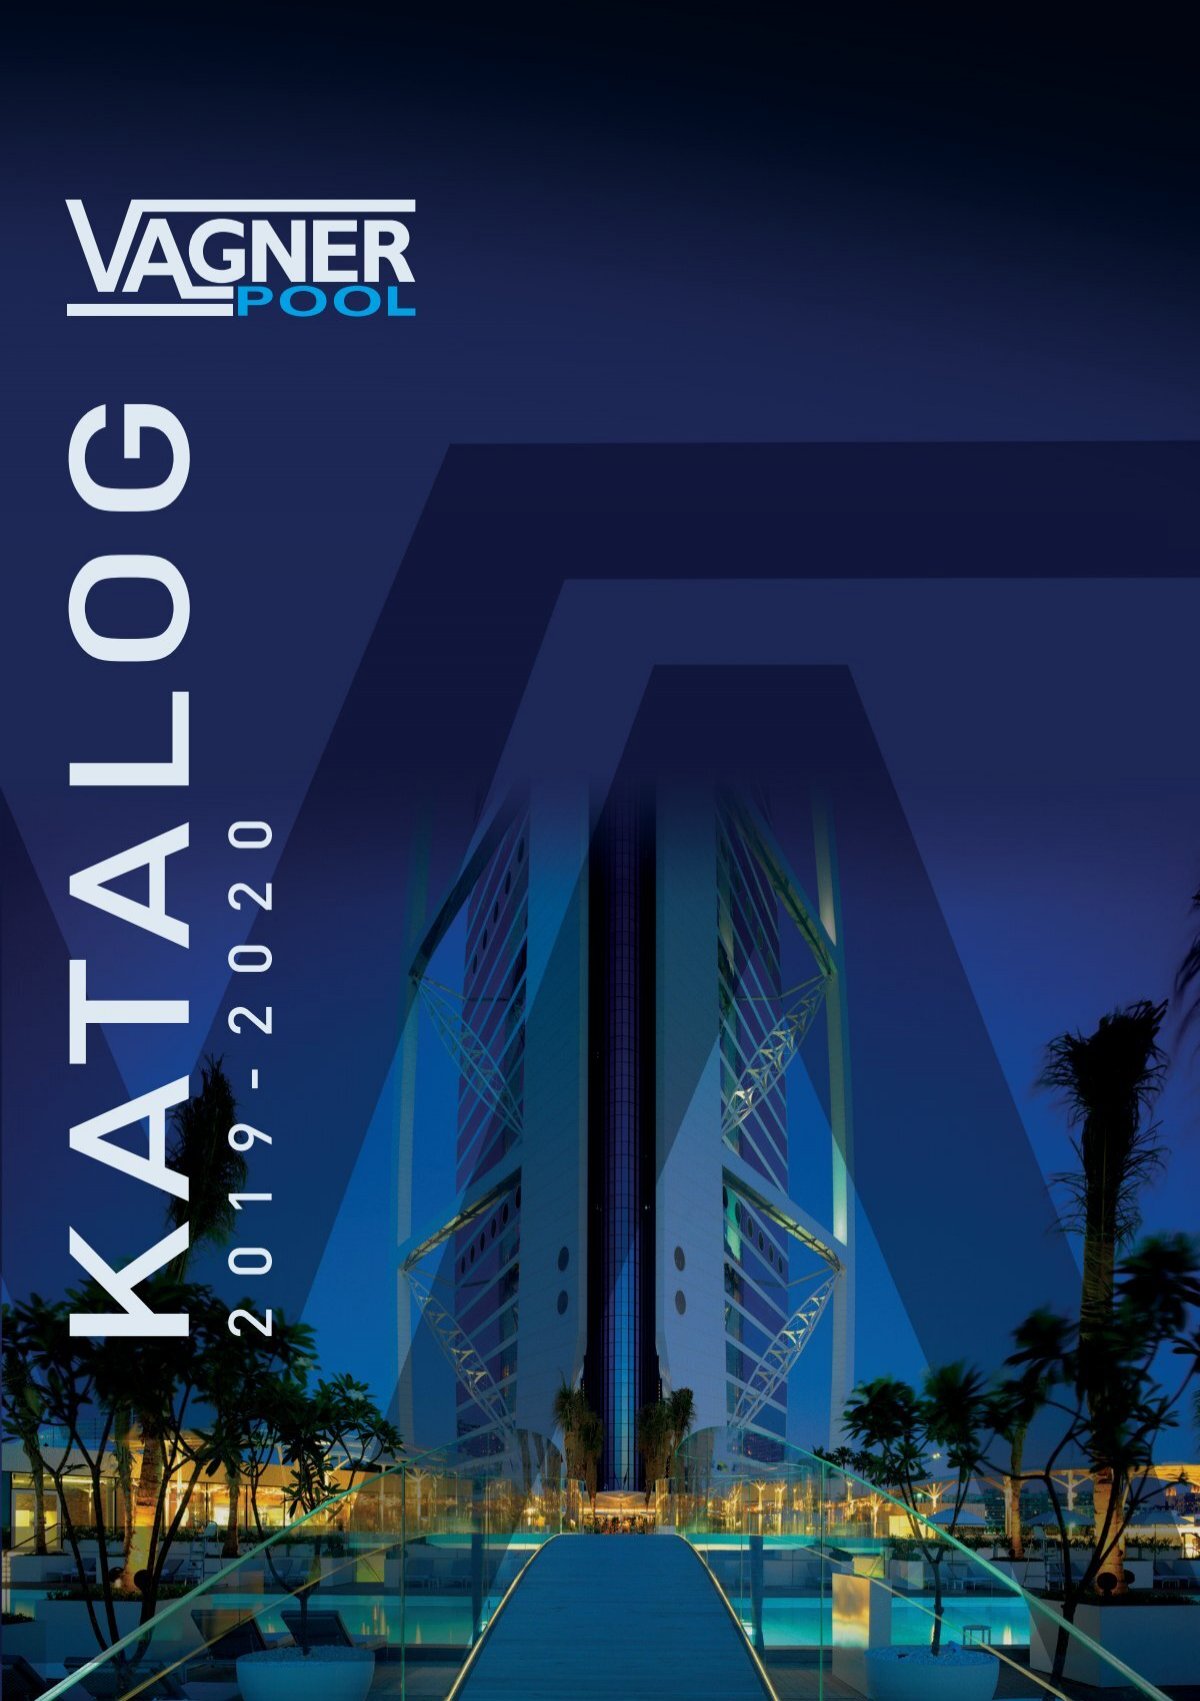 Katalog Vagner Pool 2019 2020